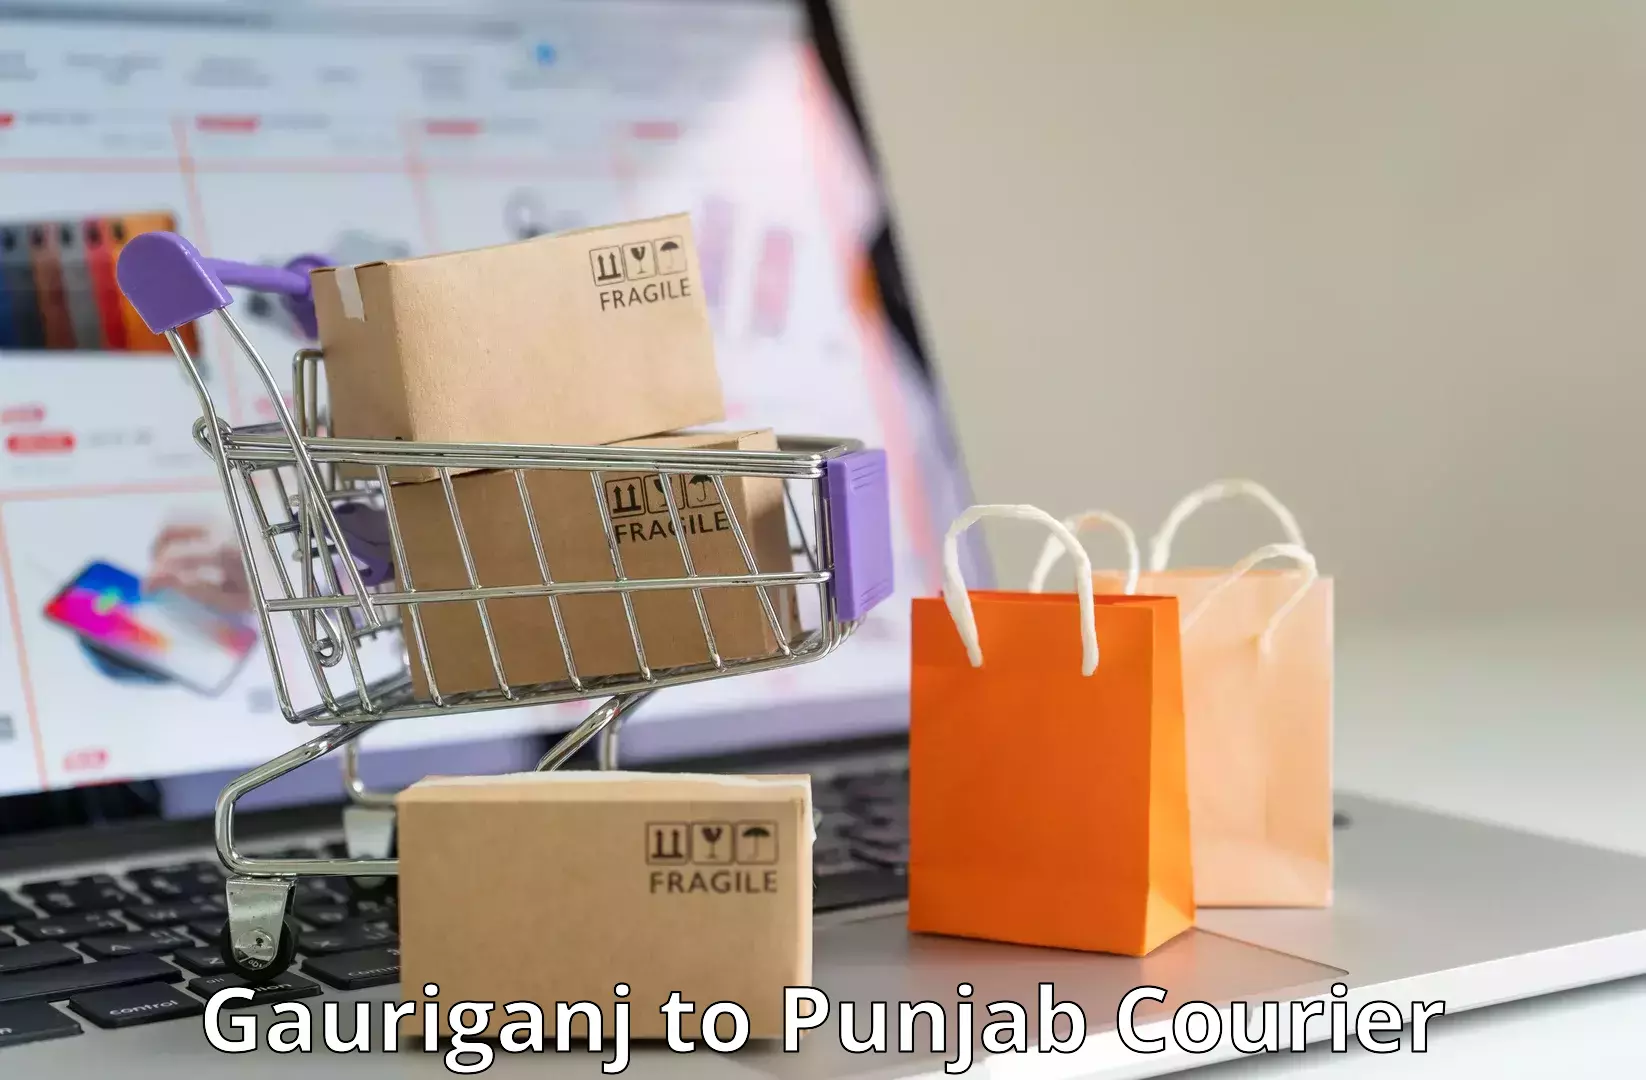 Efficient parcel service Gauriganj to Jalandhar